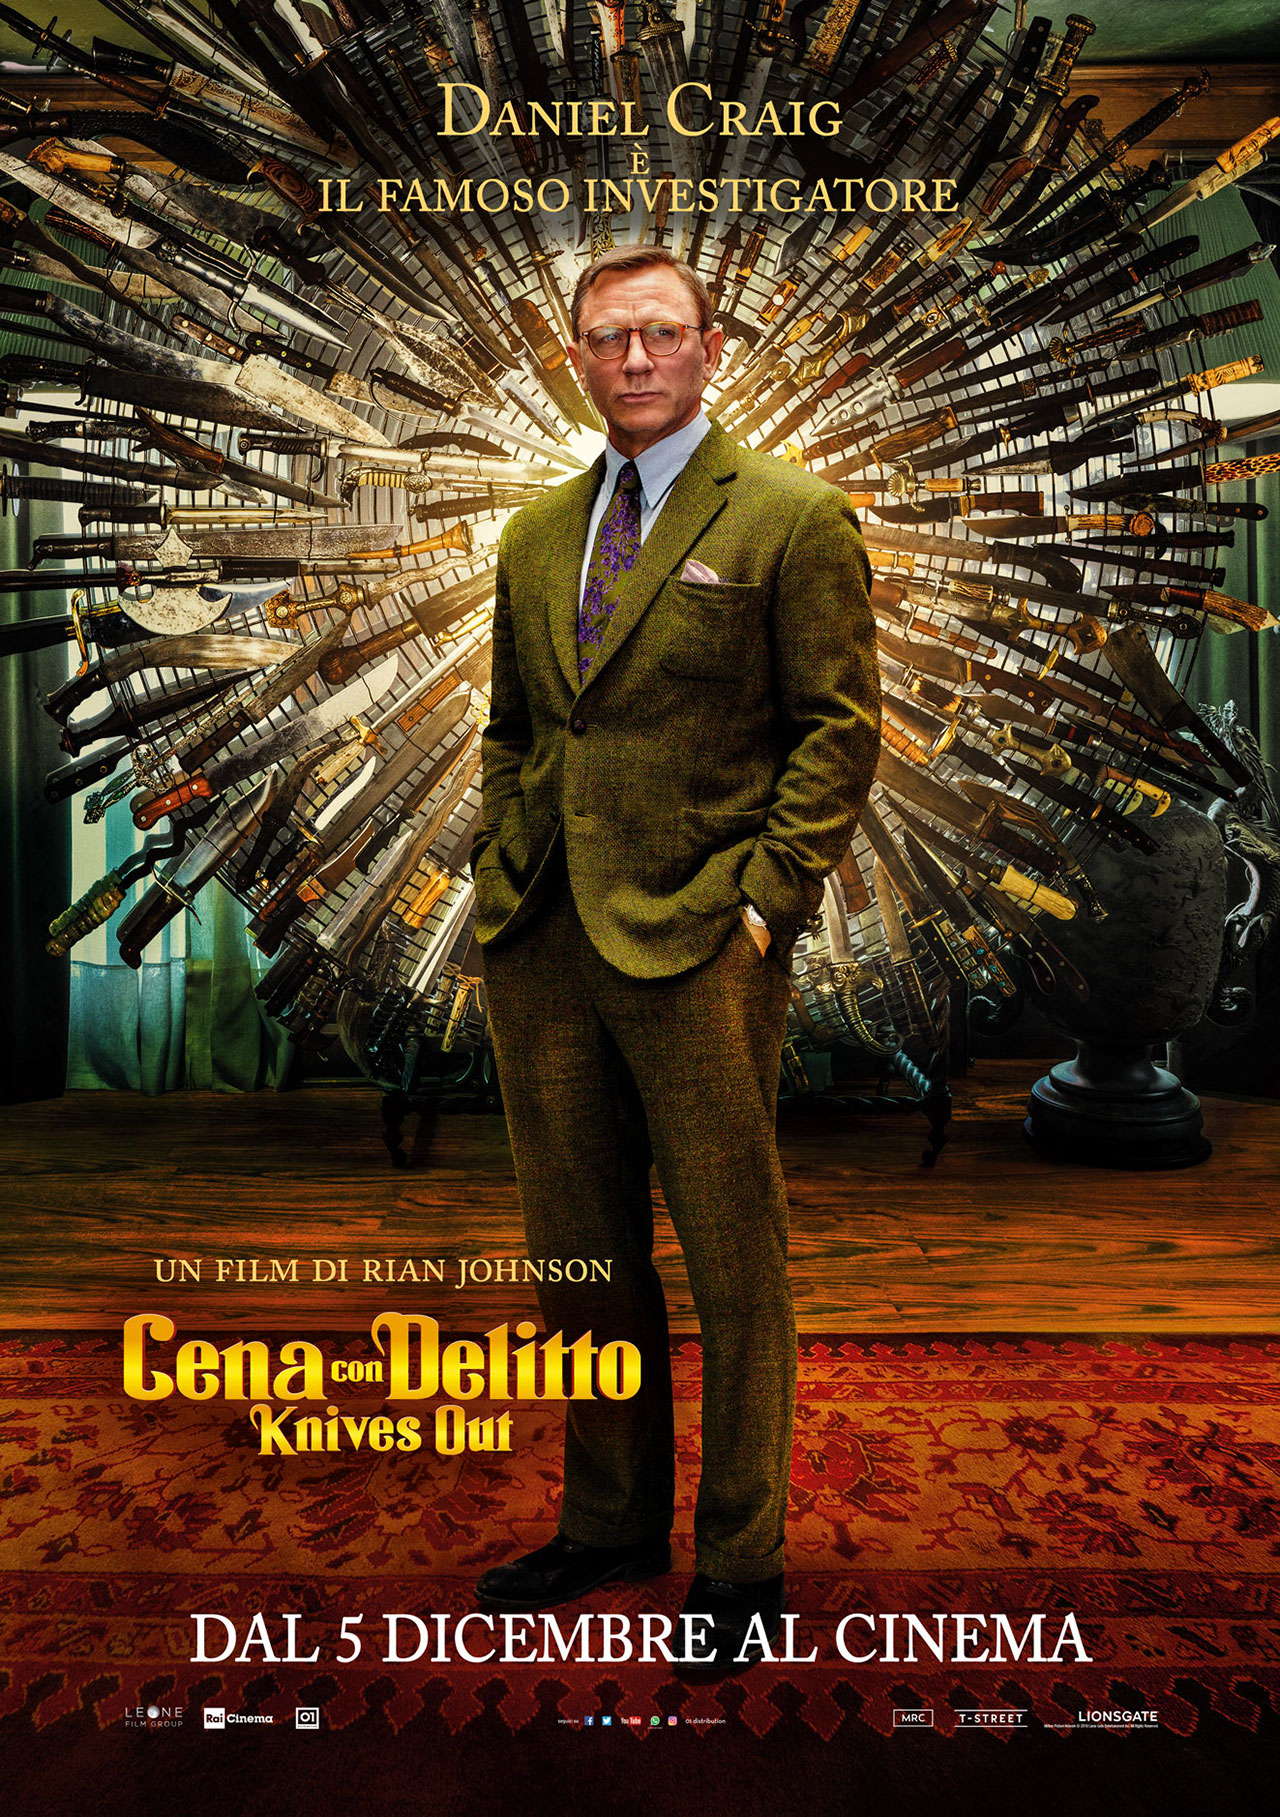 Cena con Delitto - Knives Out, i character poster dei 10 protagonisti 